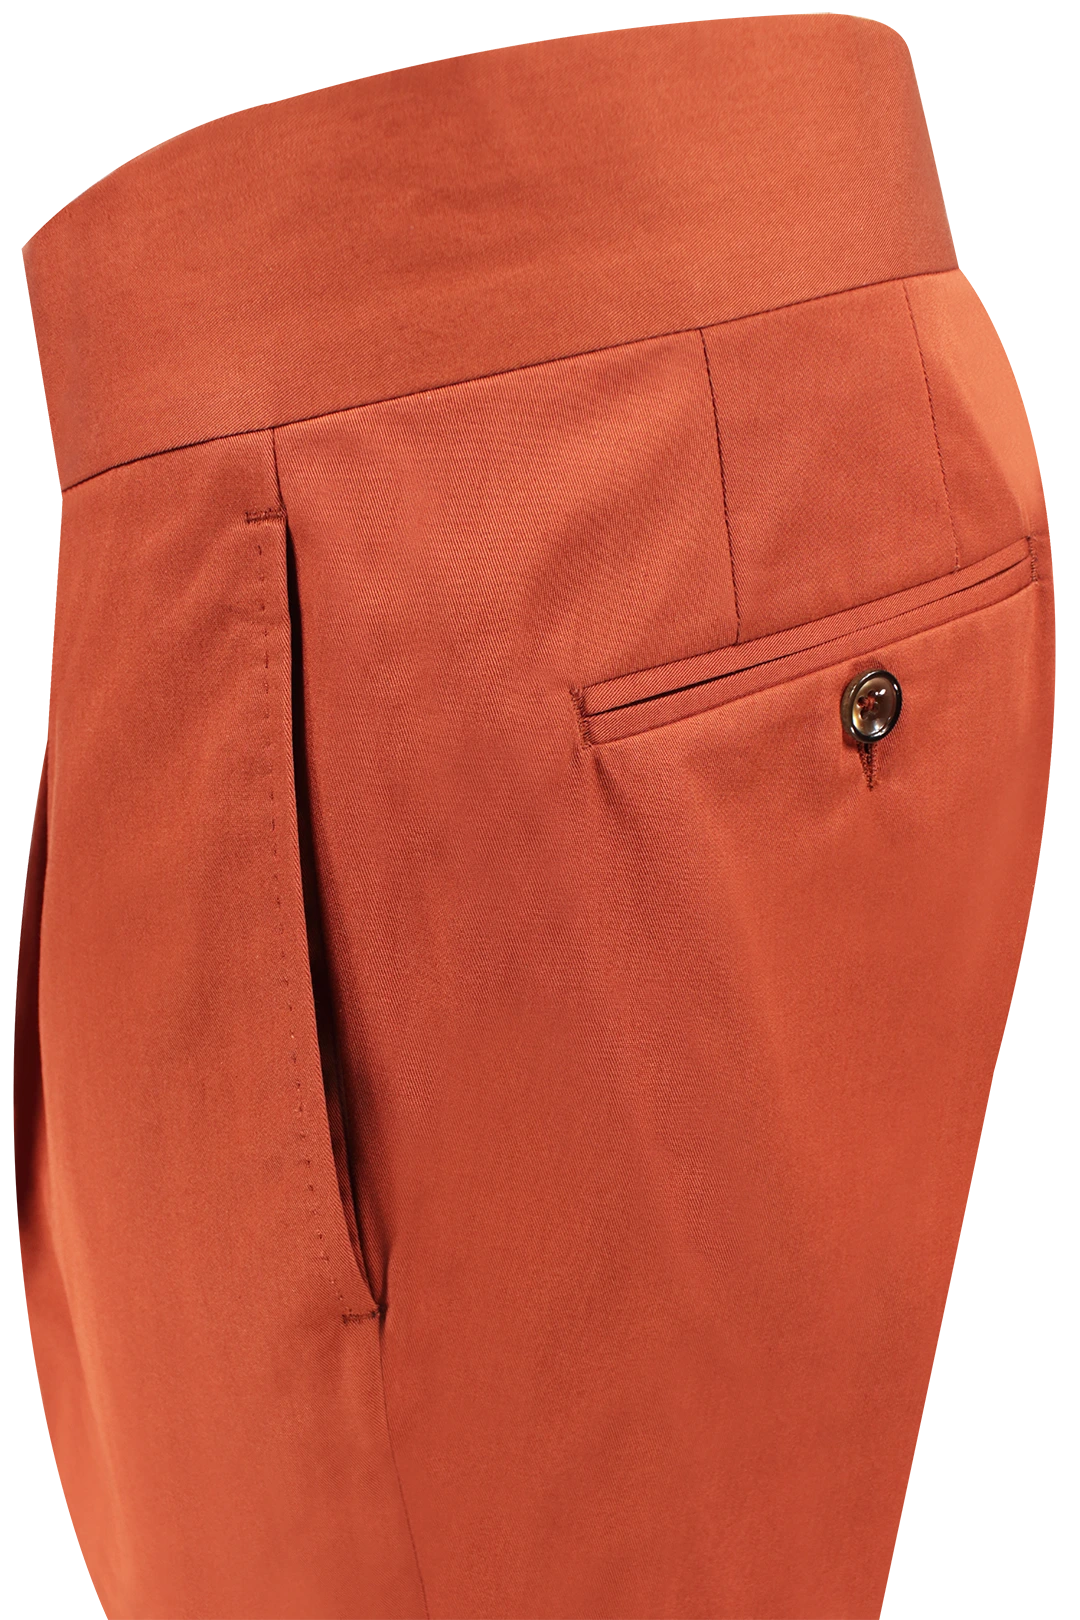 Pantalone pince cinta sartoriale cotone coccio tasca